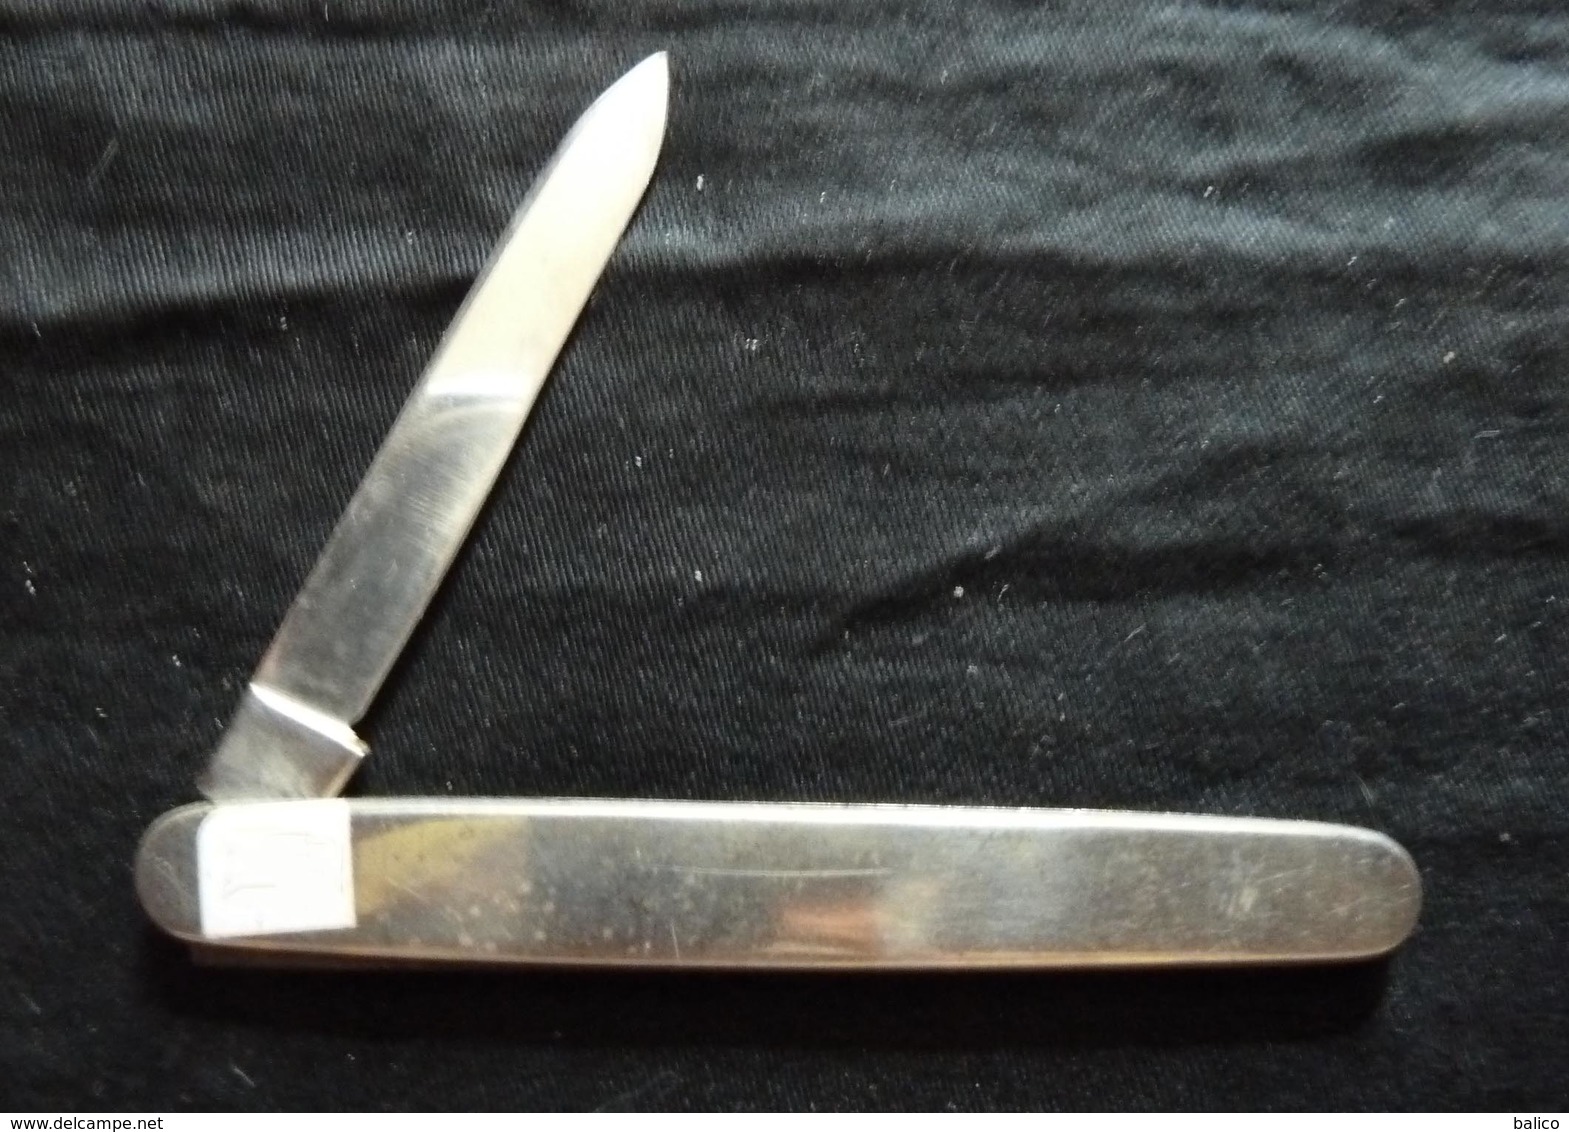 Couteau De Poche - Stainless  FRUIT KNIFF - Une Lame - Couteaux